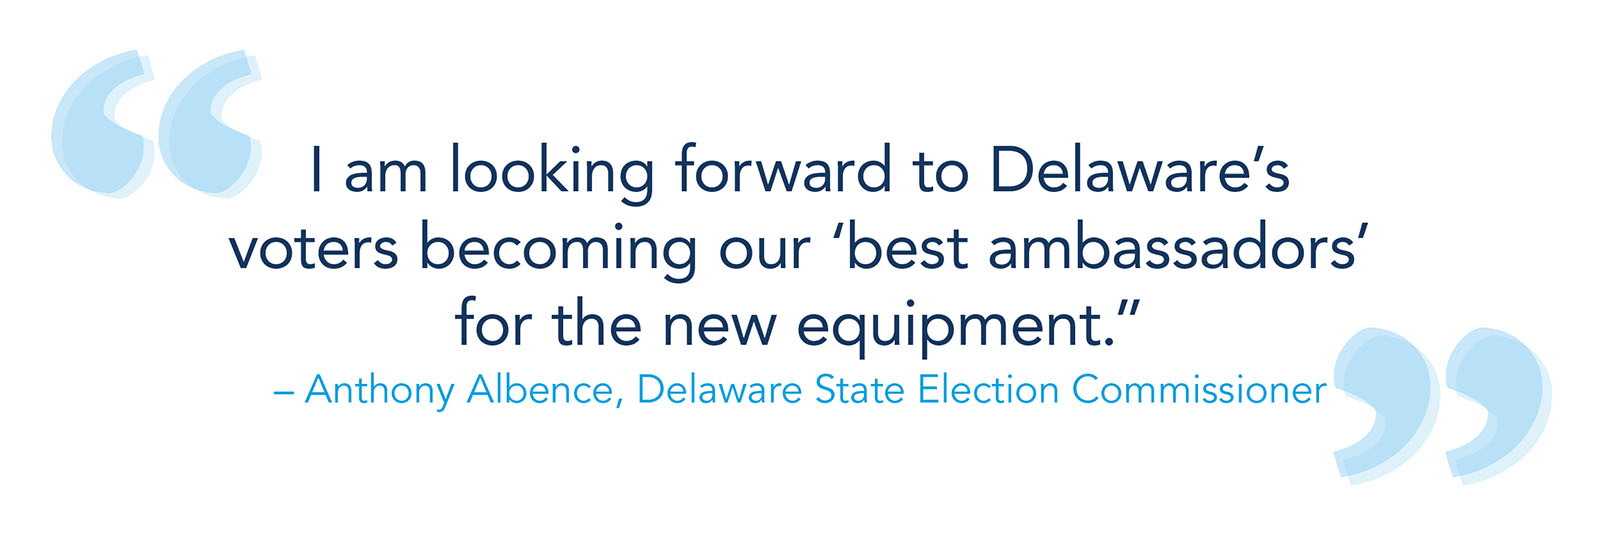 “我期待着Delaware的选民成为新设备的”最佳大使“ - 南·安拉华州国家选举专员